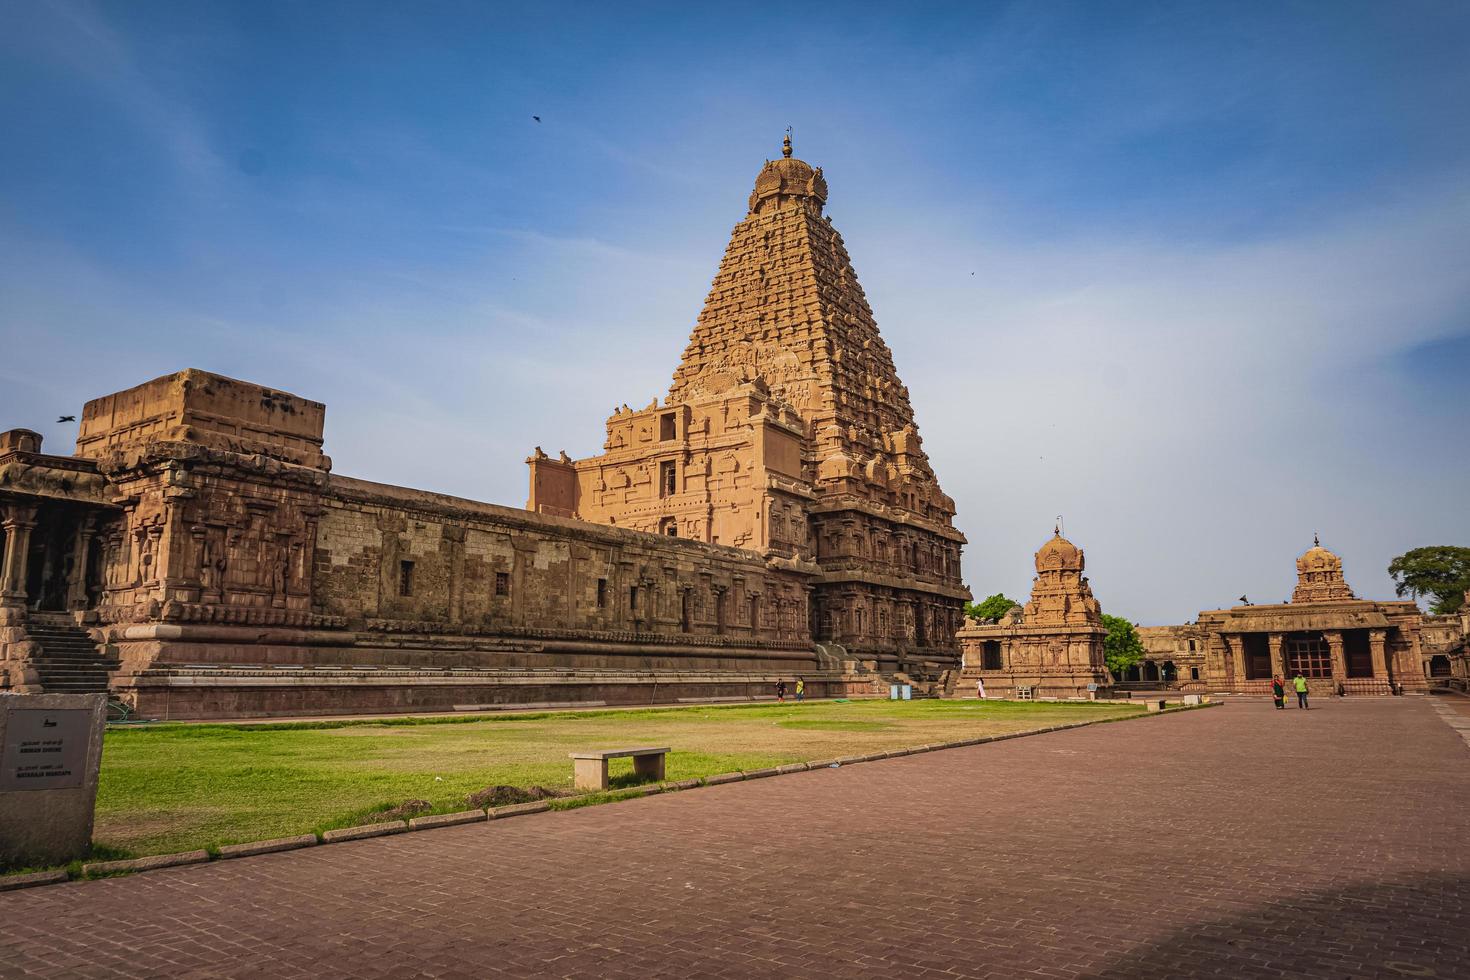 tanjore stor tempel eller brihadeshwara tempel var byggd förbi kung raja raja cholan i thanjavur, tamil nadu. den är de mycket äldsta och högsta tempel i Indien. detta tempel anges i unescos arv webbplats foto